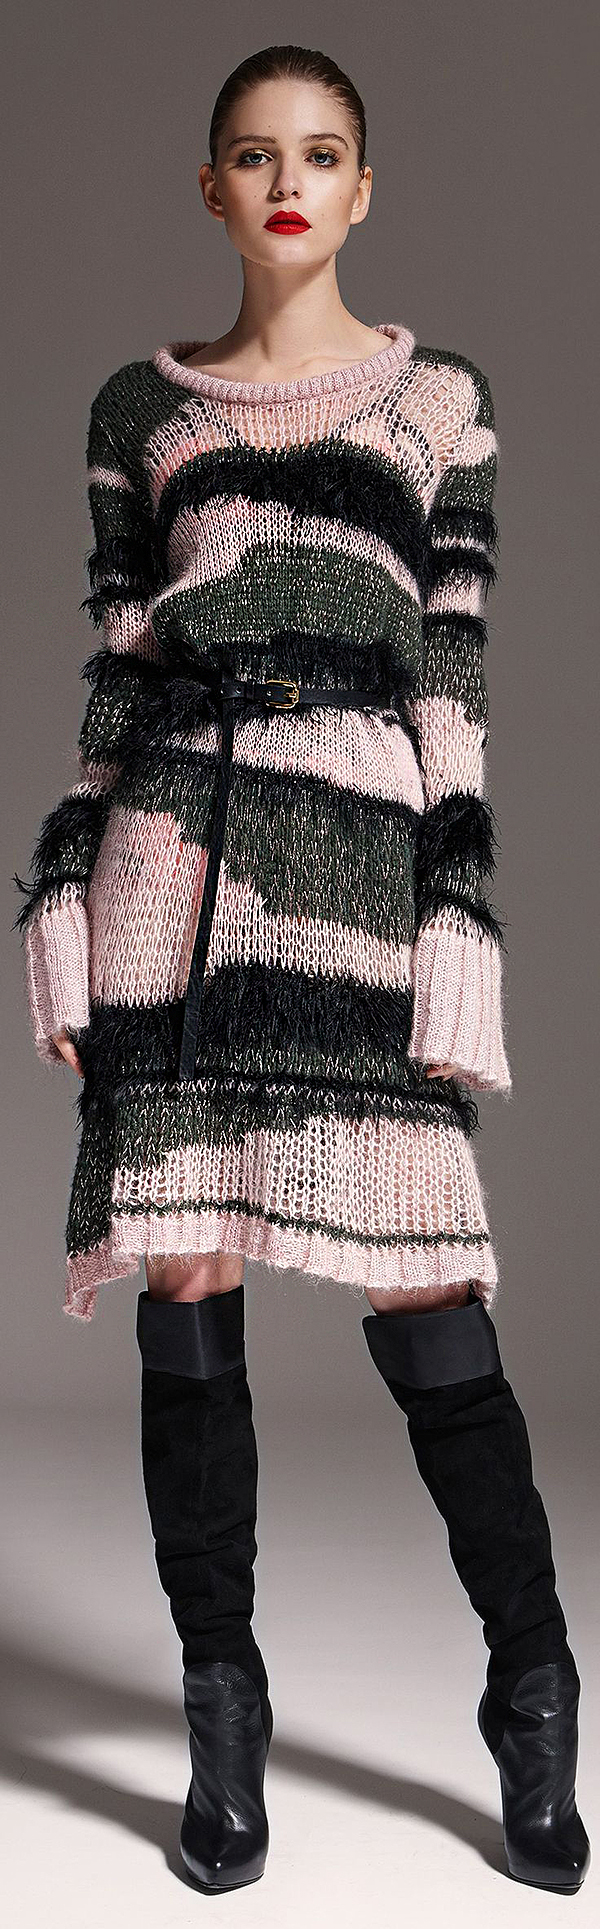 Тёплые фантазии вязаной моды: 55 экстравагантных и эффектных нарядов, фото № 31